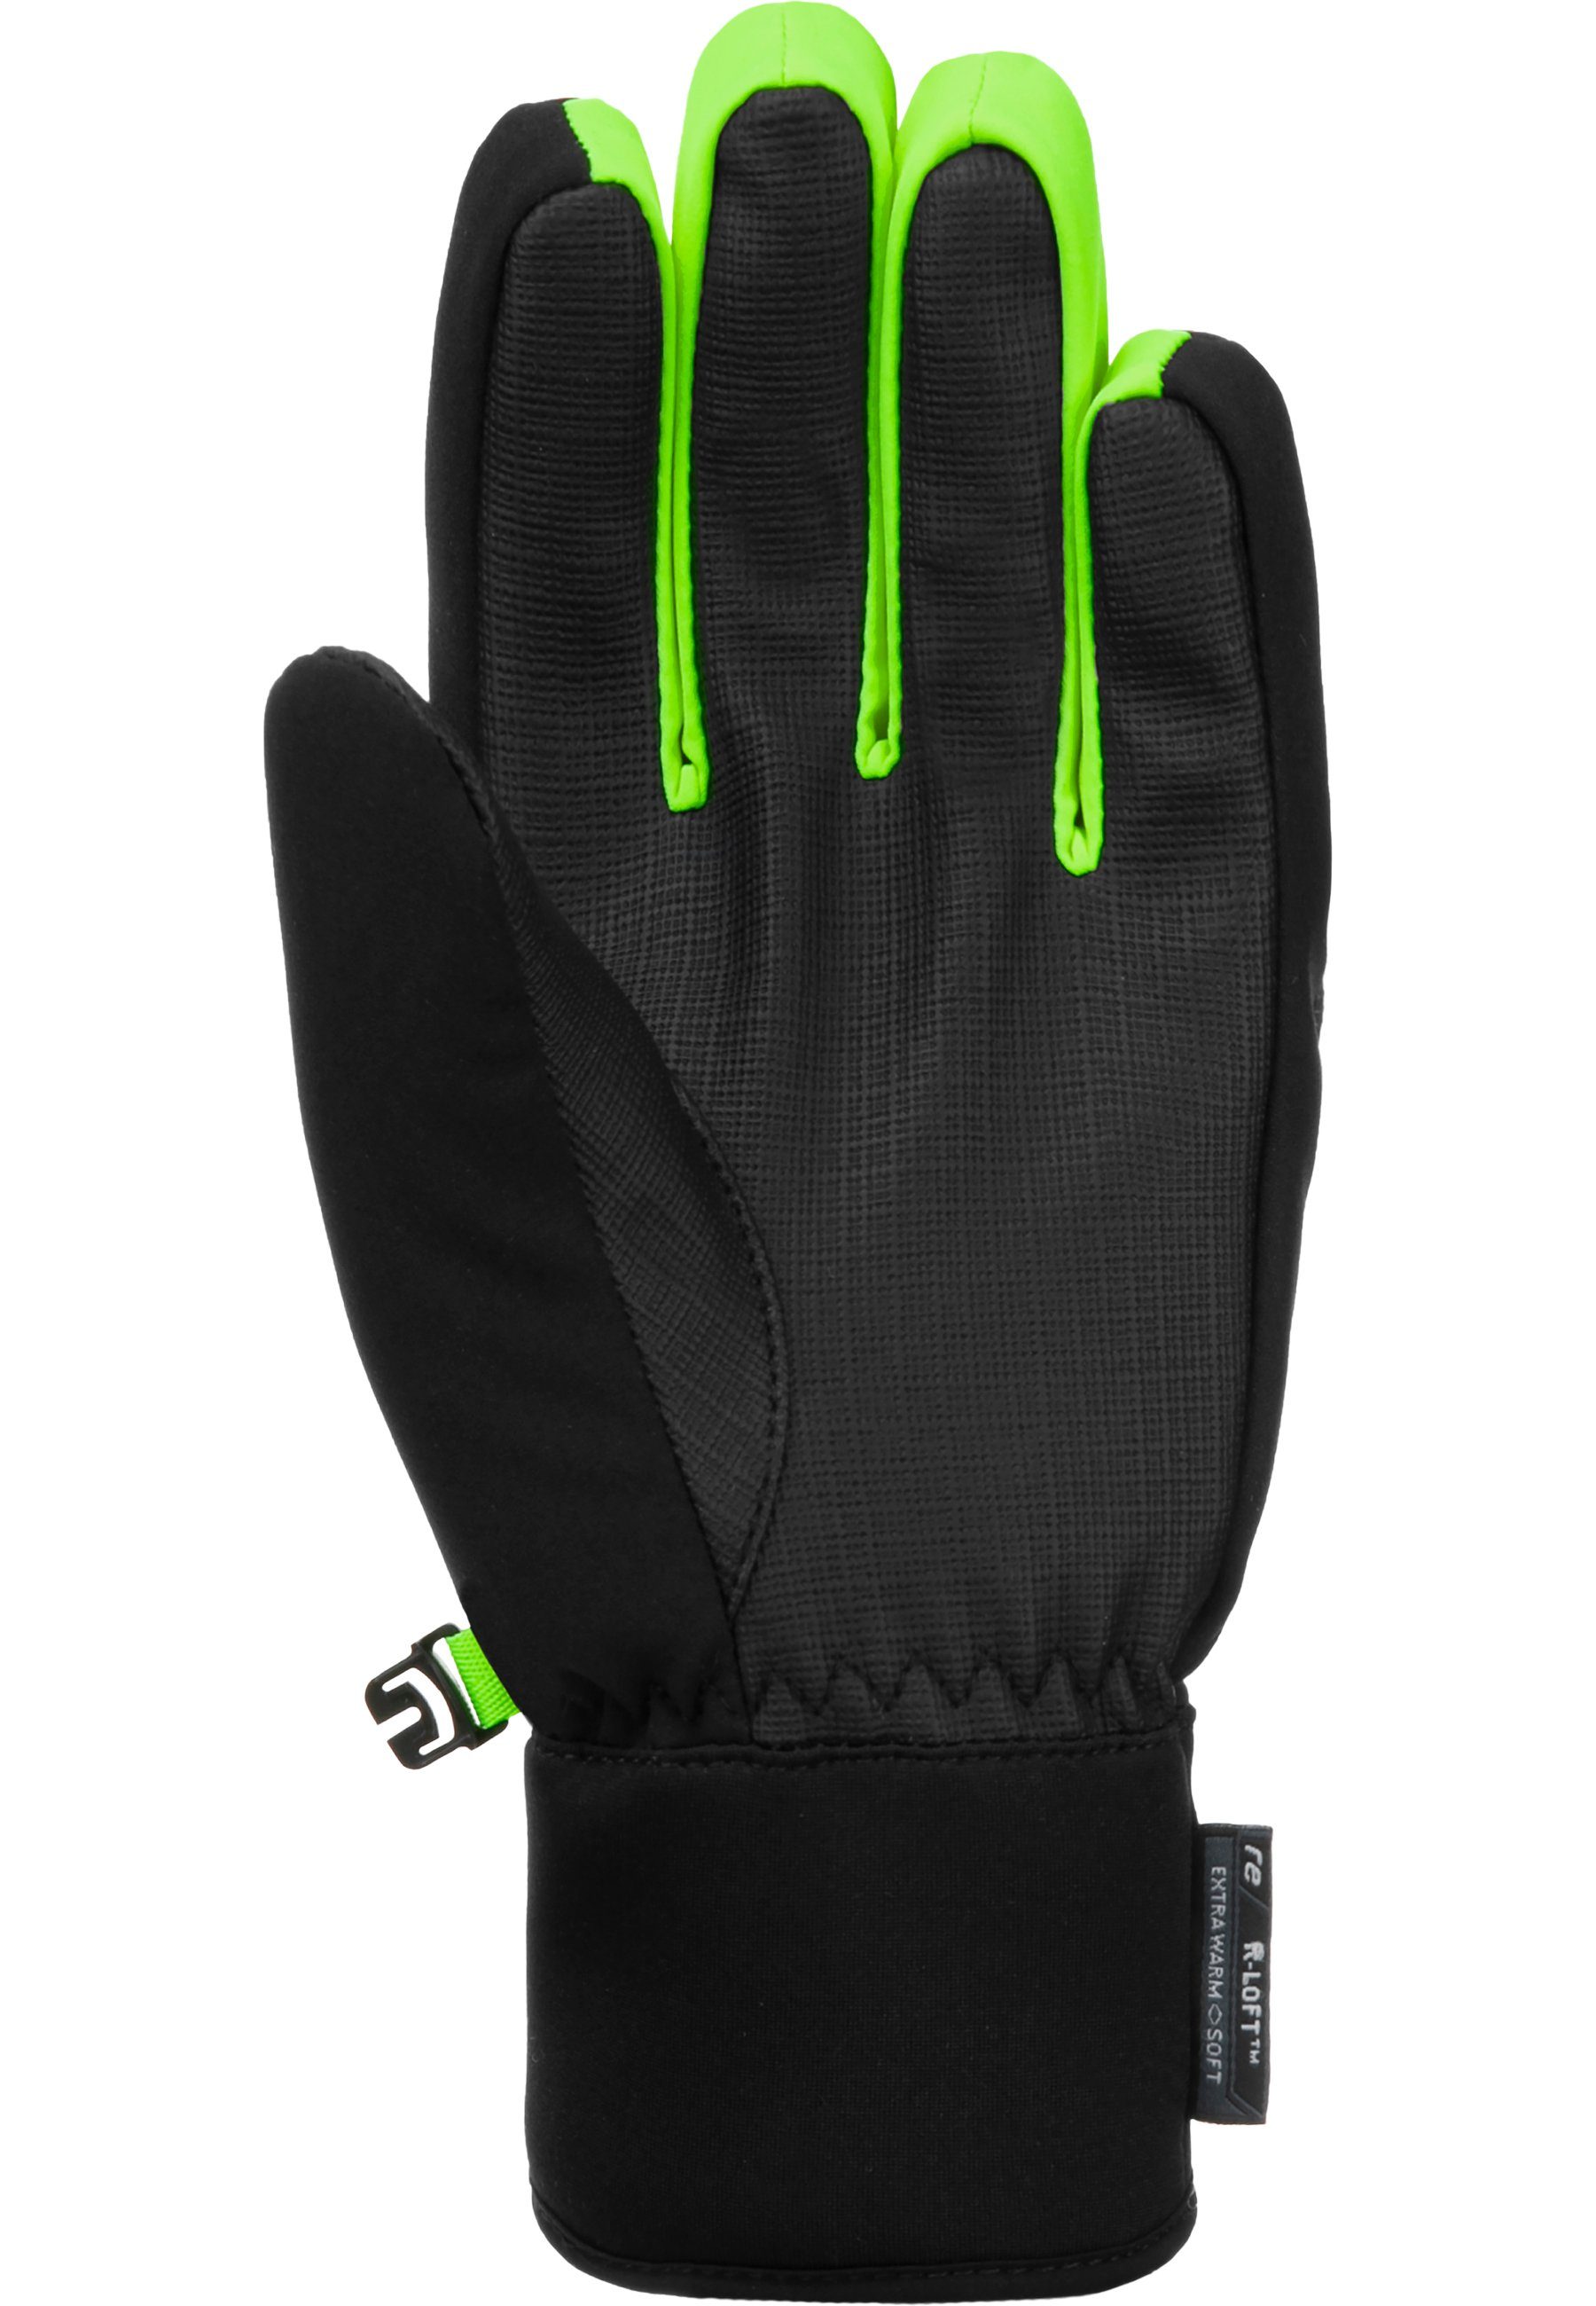 Reusch Skihandschuhe Simon R-TEX® sehr XT schwarz-hellgrün Junior warm,wasserdicht,atmungsaktiv